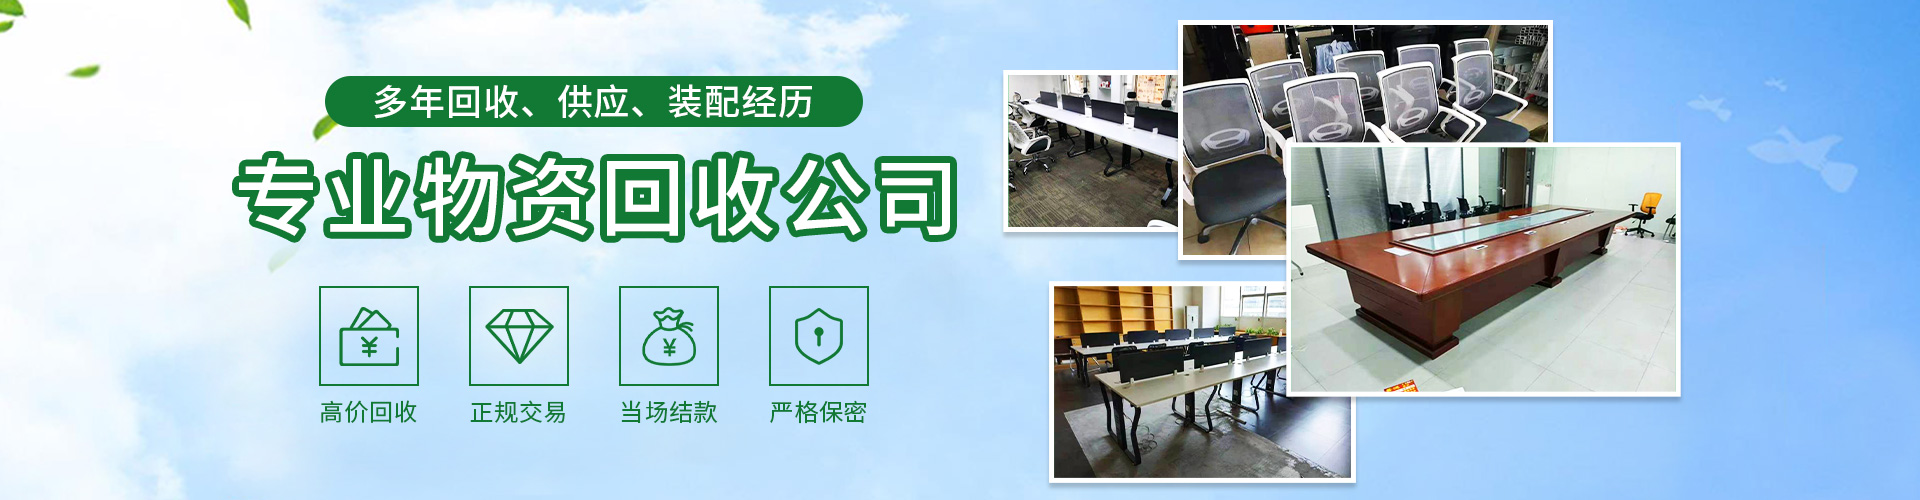 报价、回收、供应、装配于一体的上海办公家具回收服务商